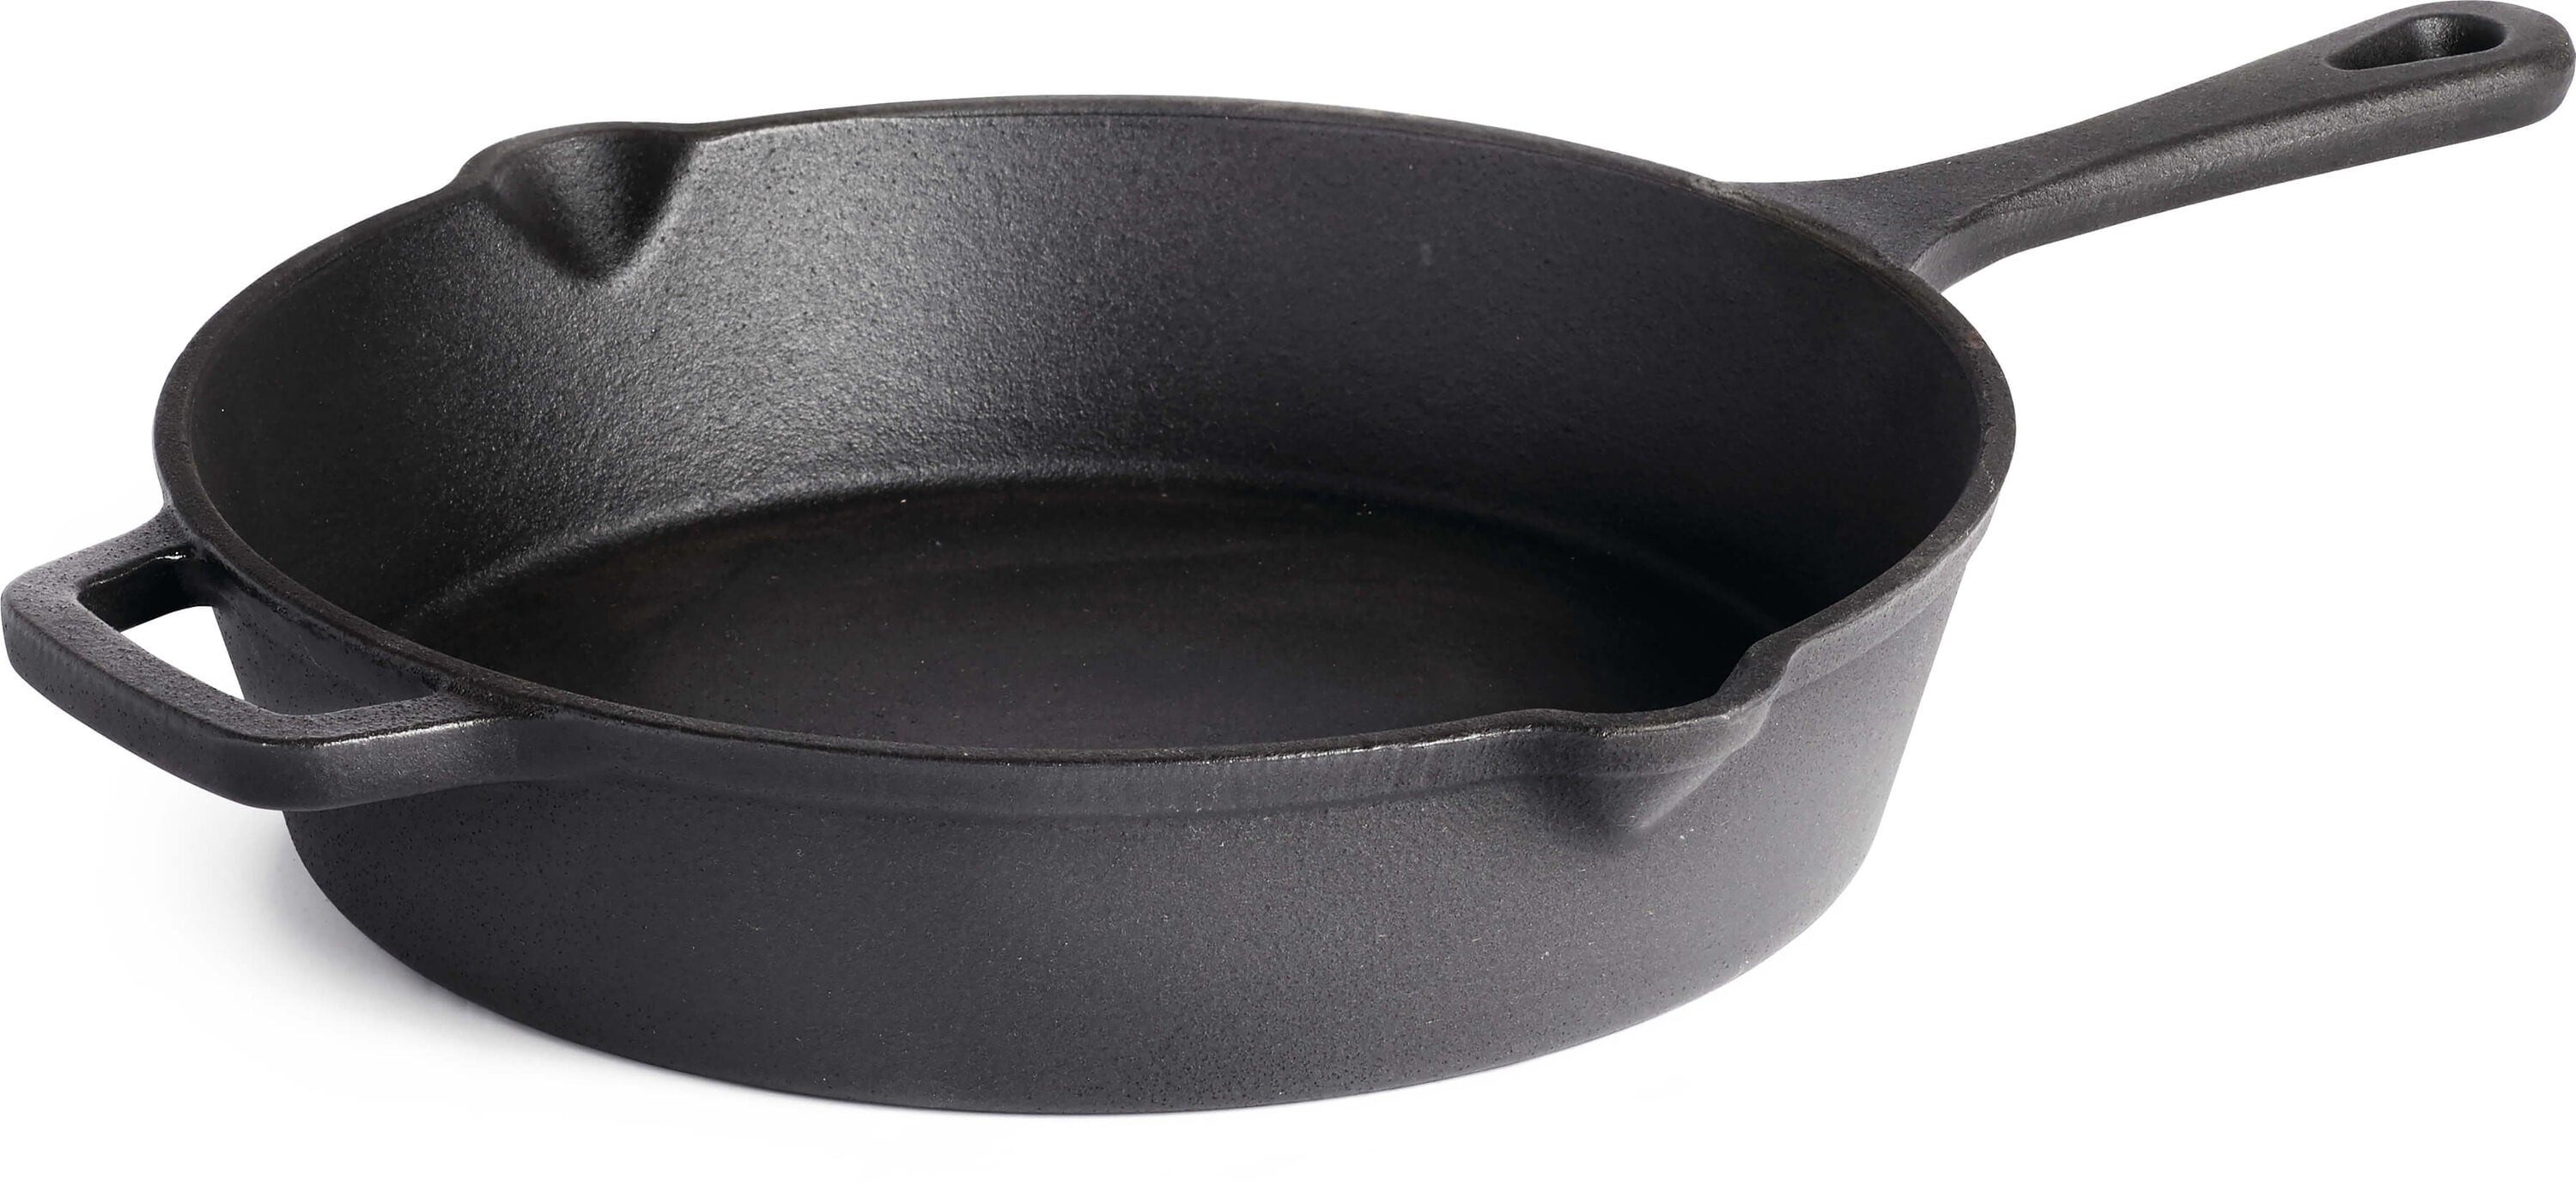 NAPOLEON Grill Accessories Cast Iron Non-stick Grill Pan in the